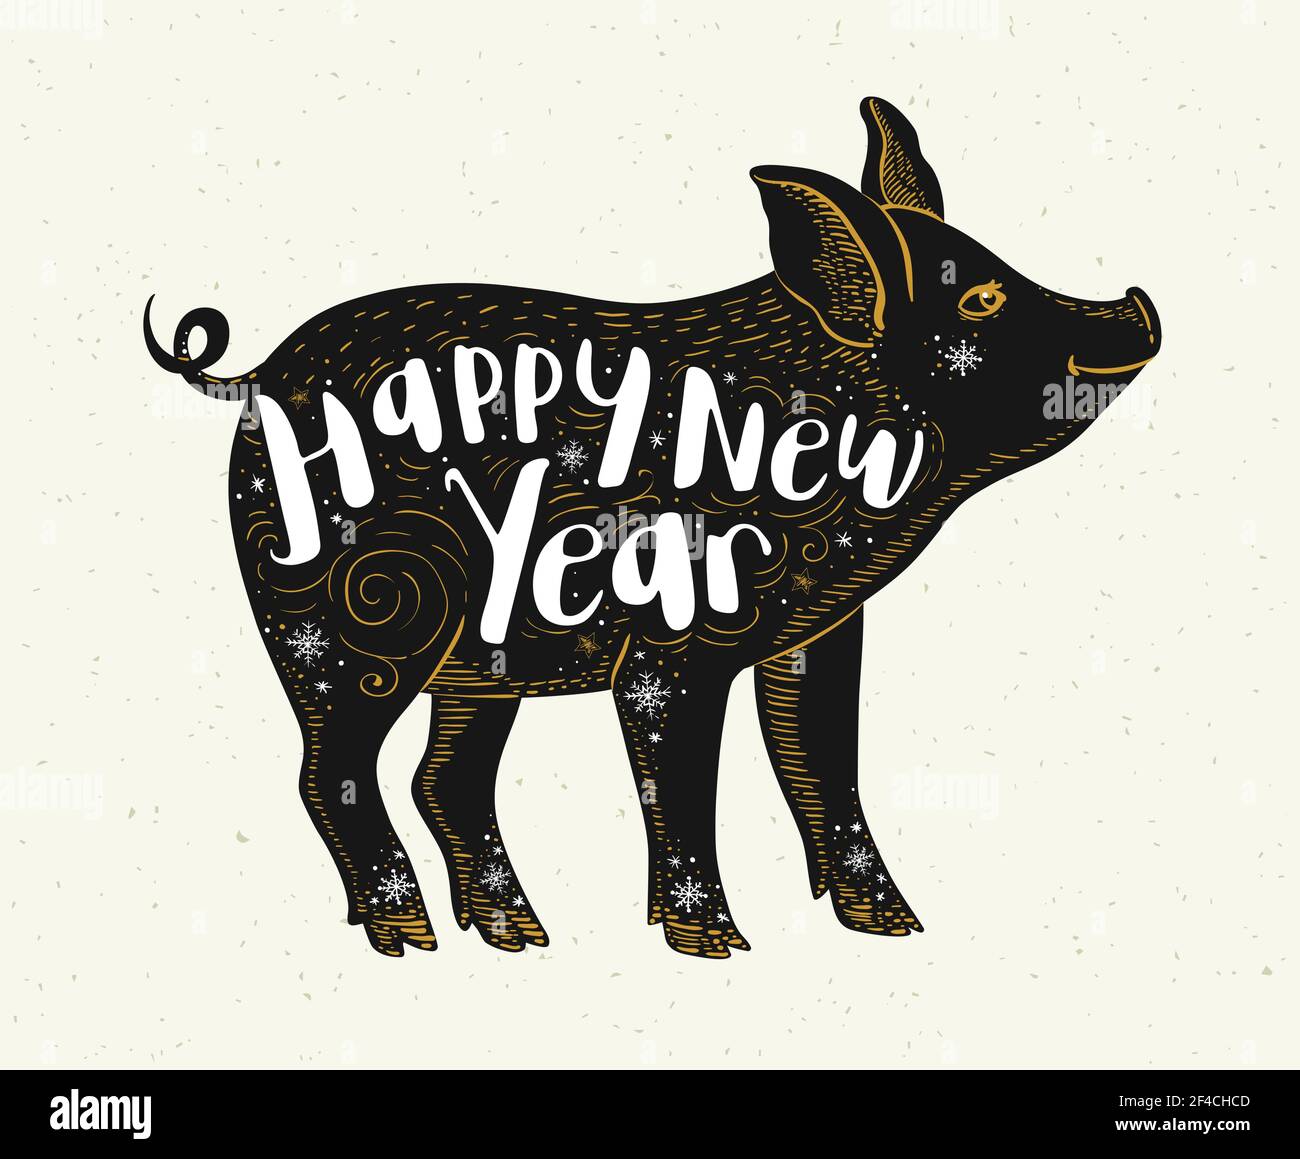 Carino maiale simbolo di zodiaco cinese per il 2019 nuovo anno. Silhouette nera di maiale e lettere. Illustrazione vettoriale disegnata a mano Illustrazione Vettoriale